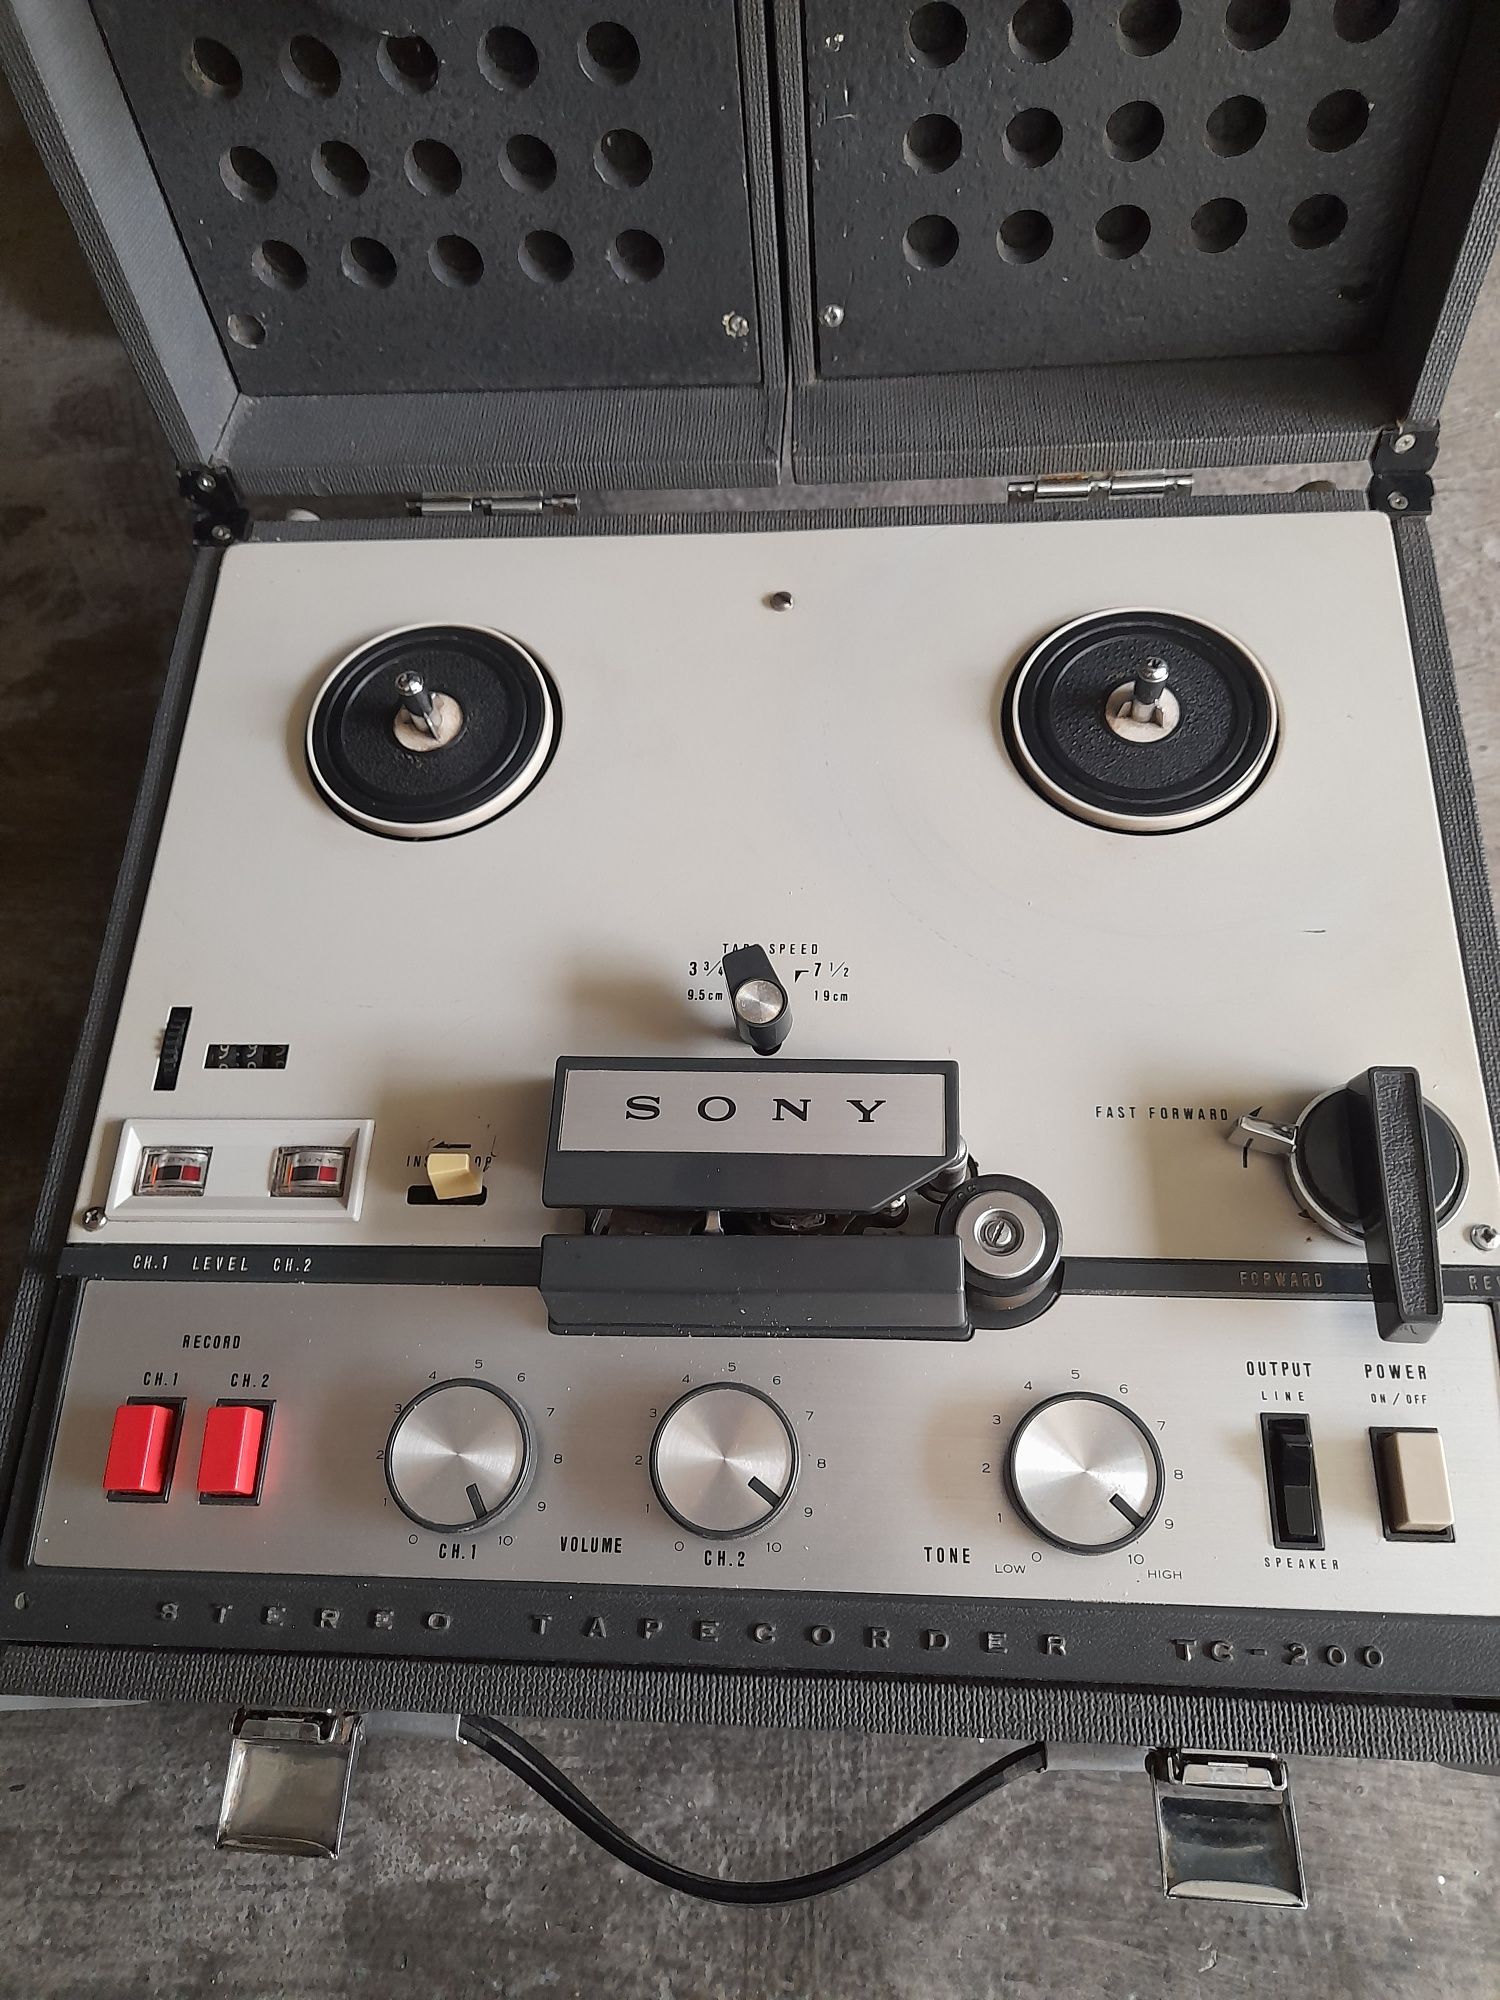 Sony TC-200 vintage gravador de rolo